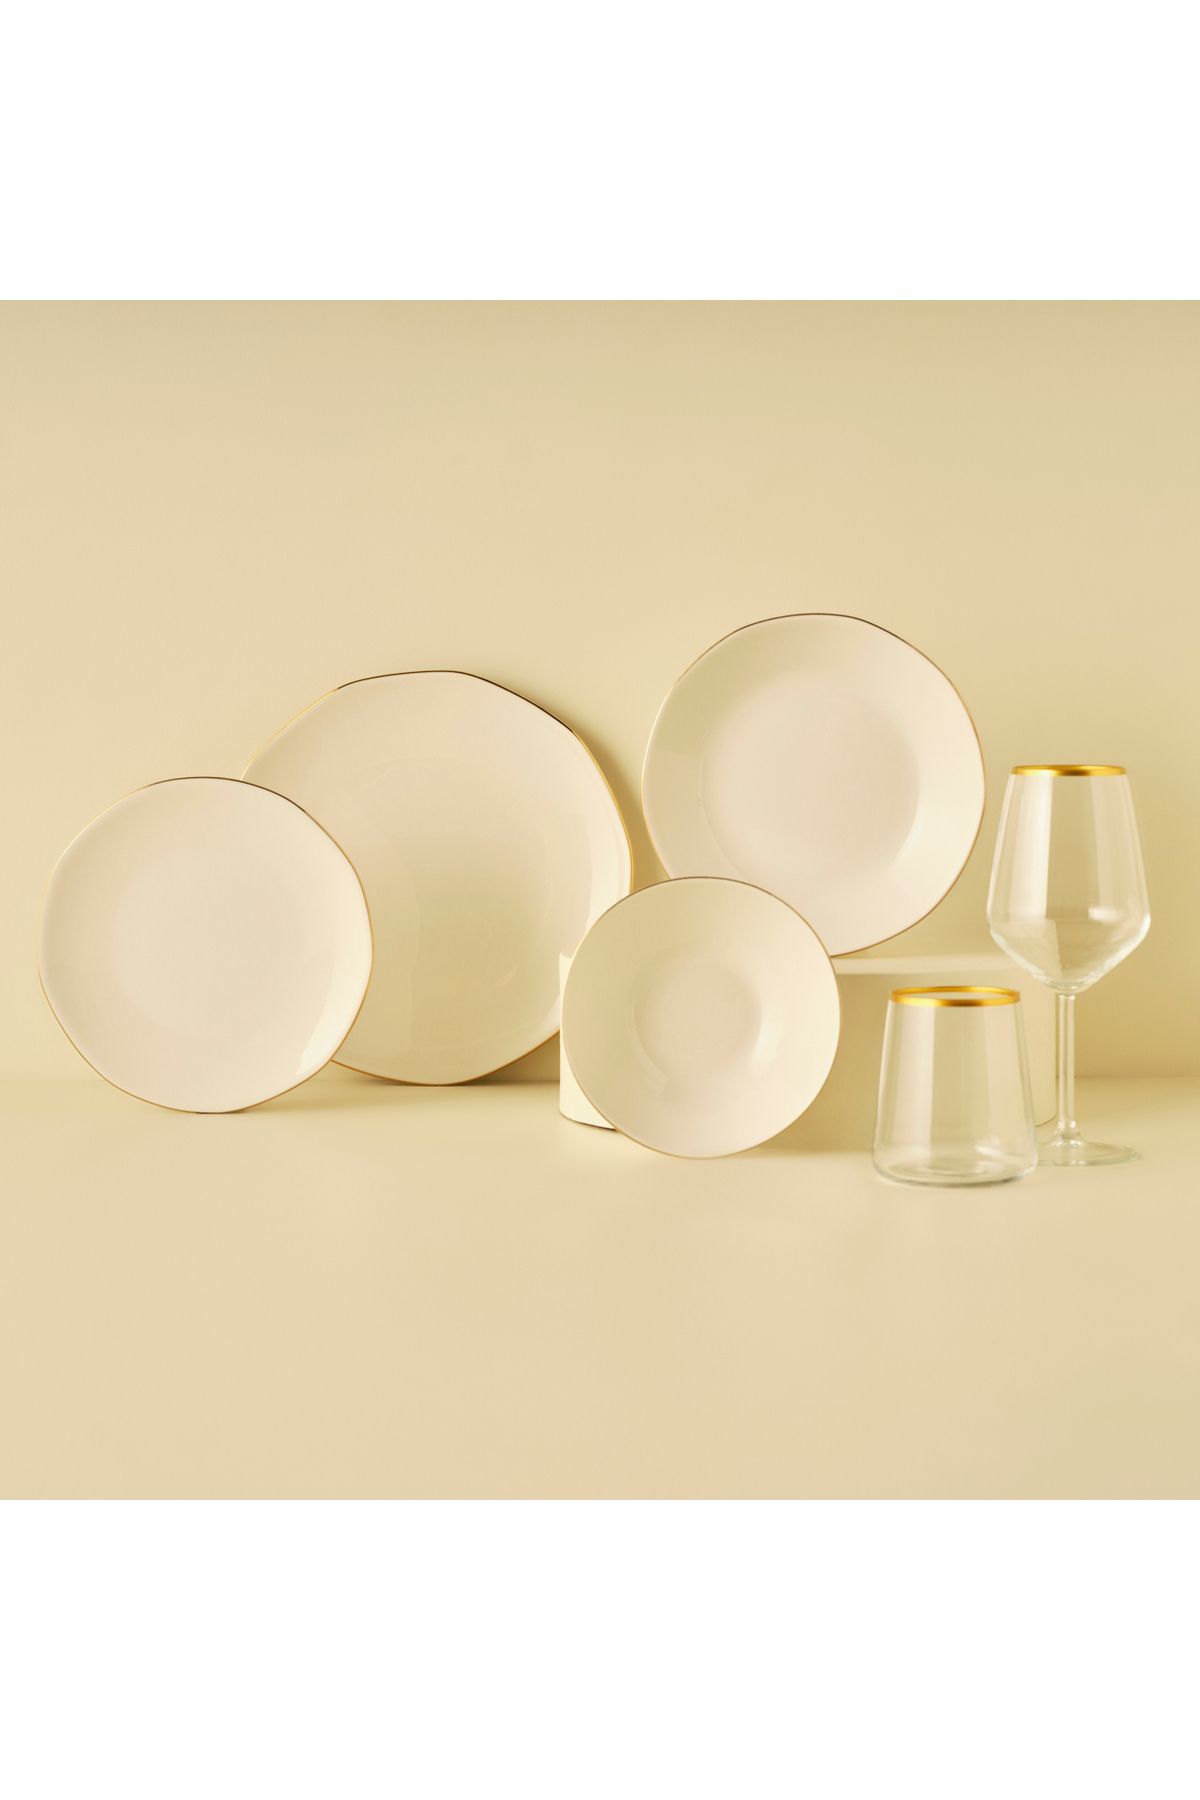 Bella Maison Opal Porselen 48 Parça 12 Kişilik Yemek Takımı (Beyaz-Gold)